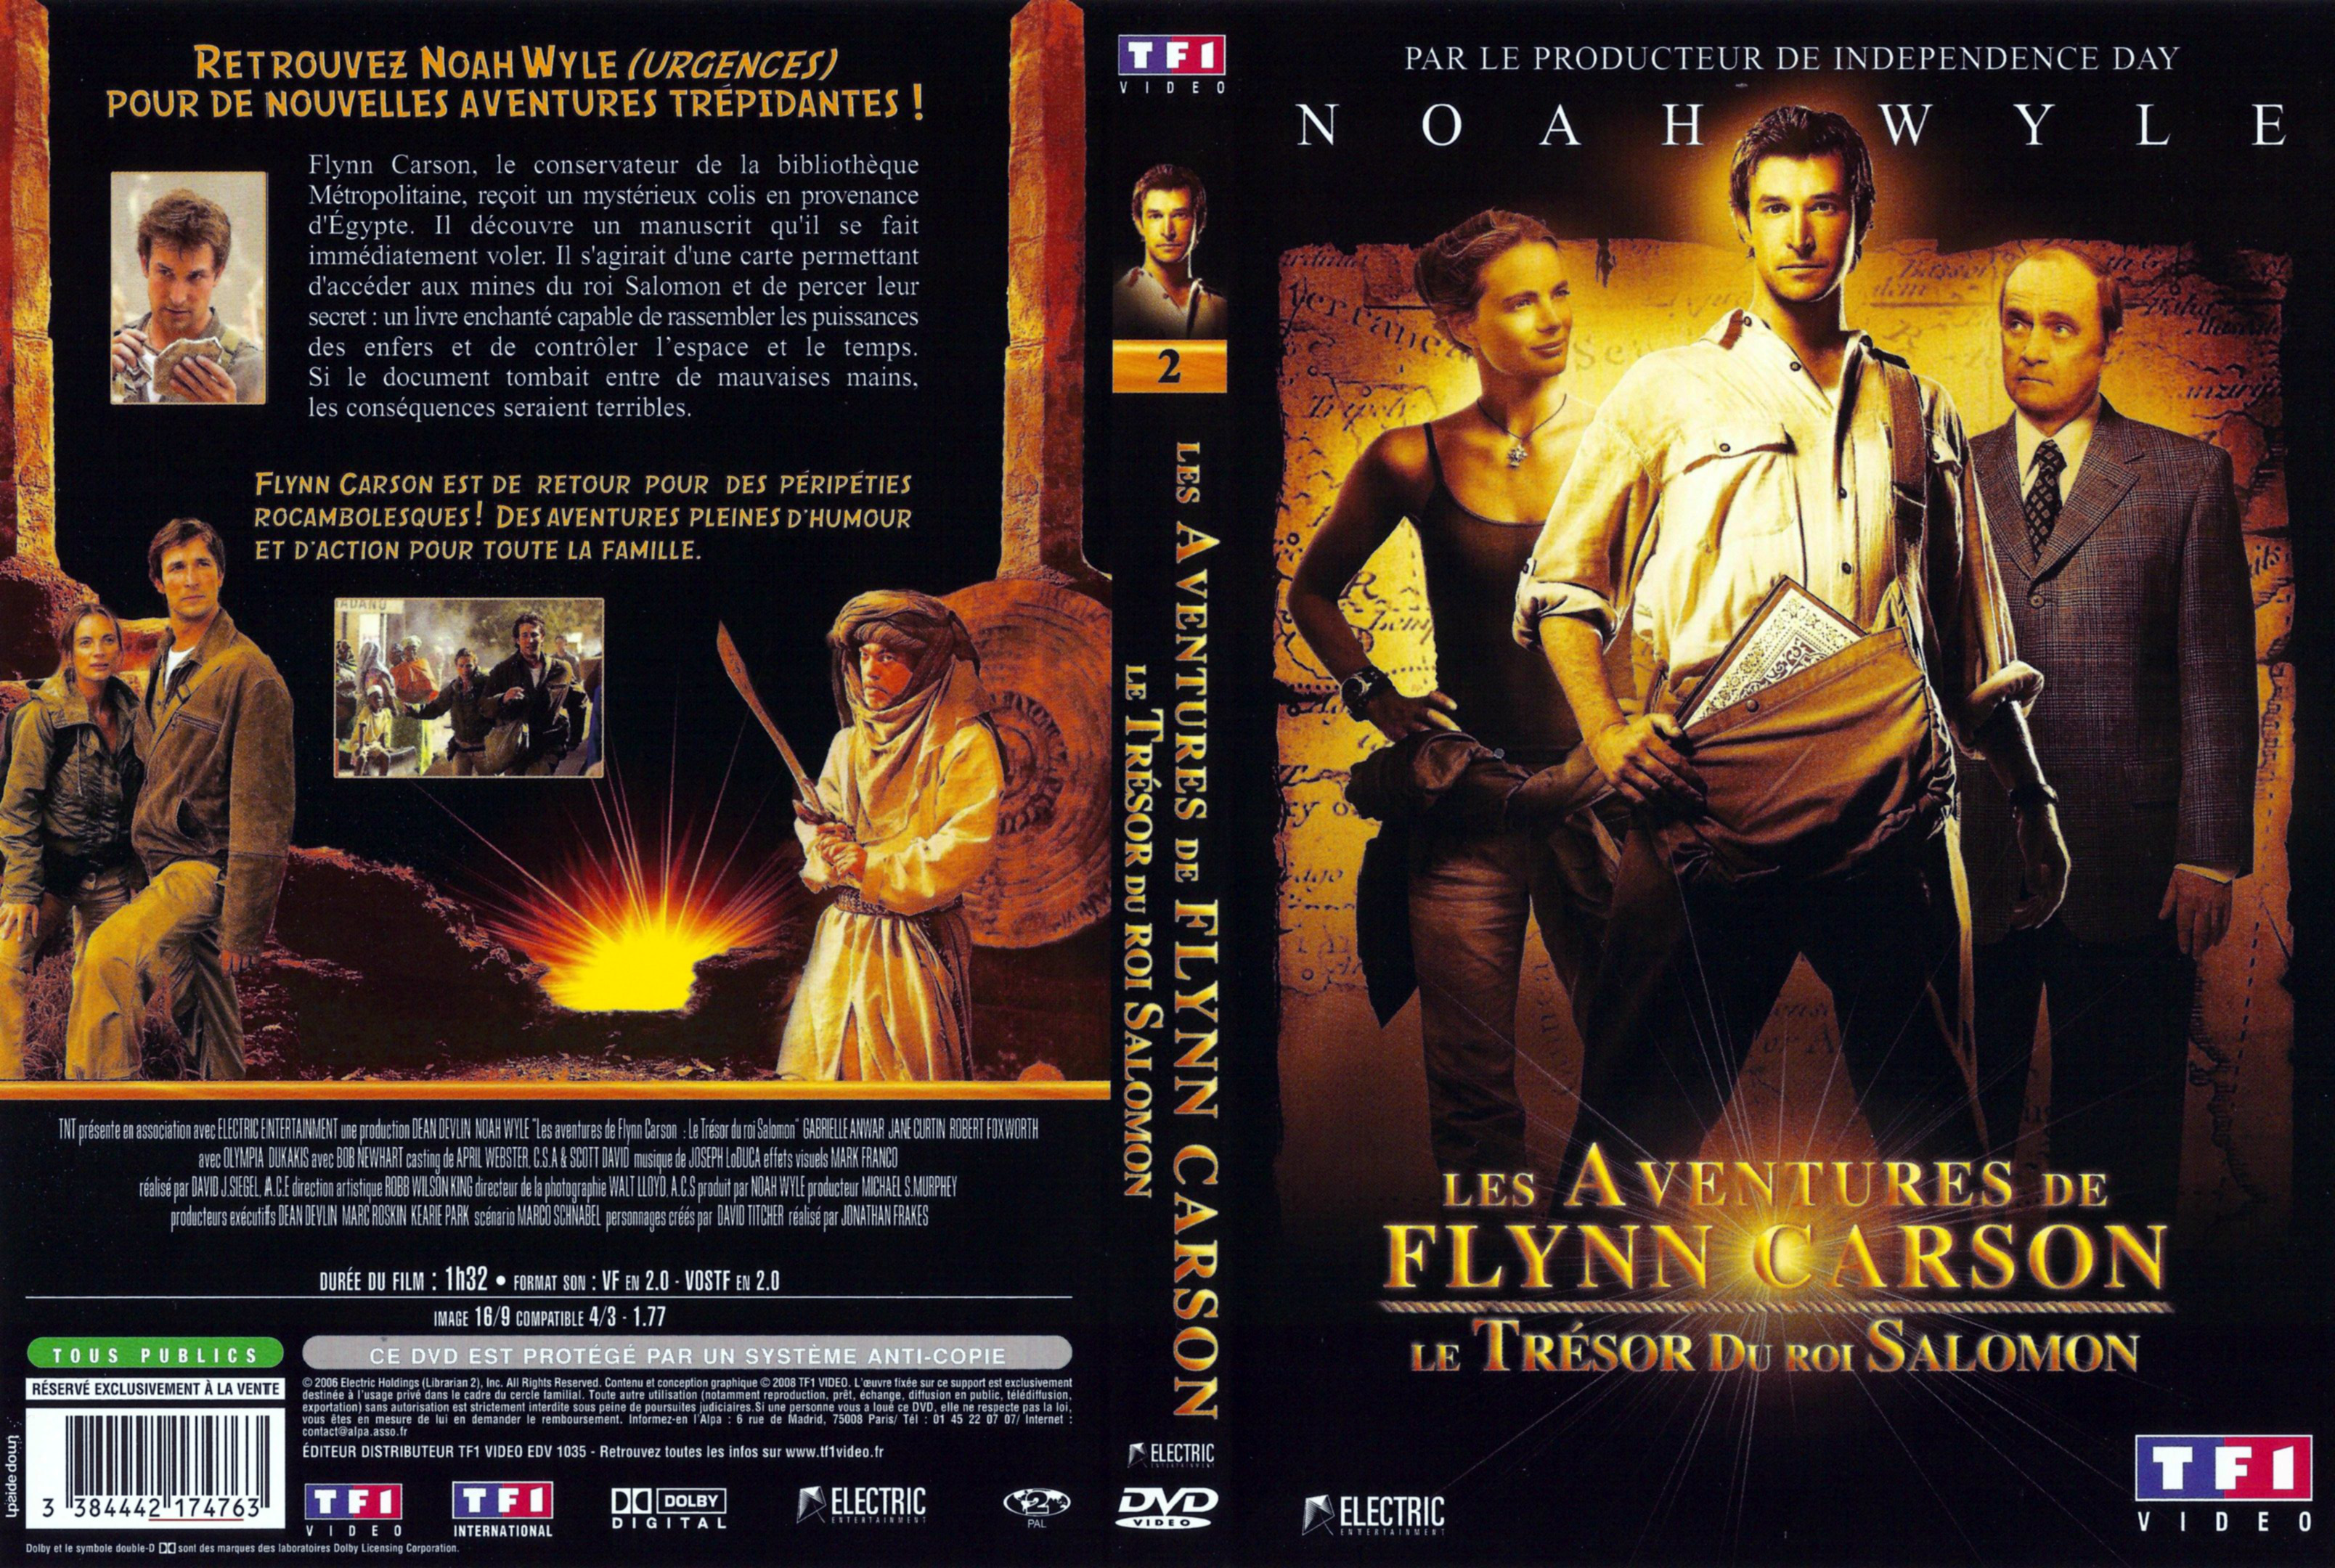 Jaquette DVD Les aventures de Flynn Carson - Le trsor du roi salomon